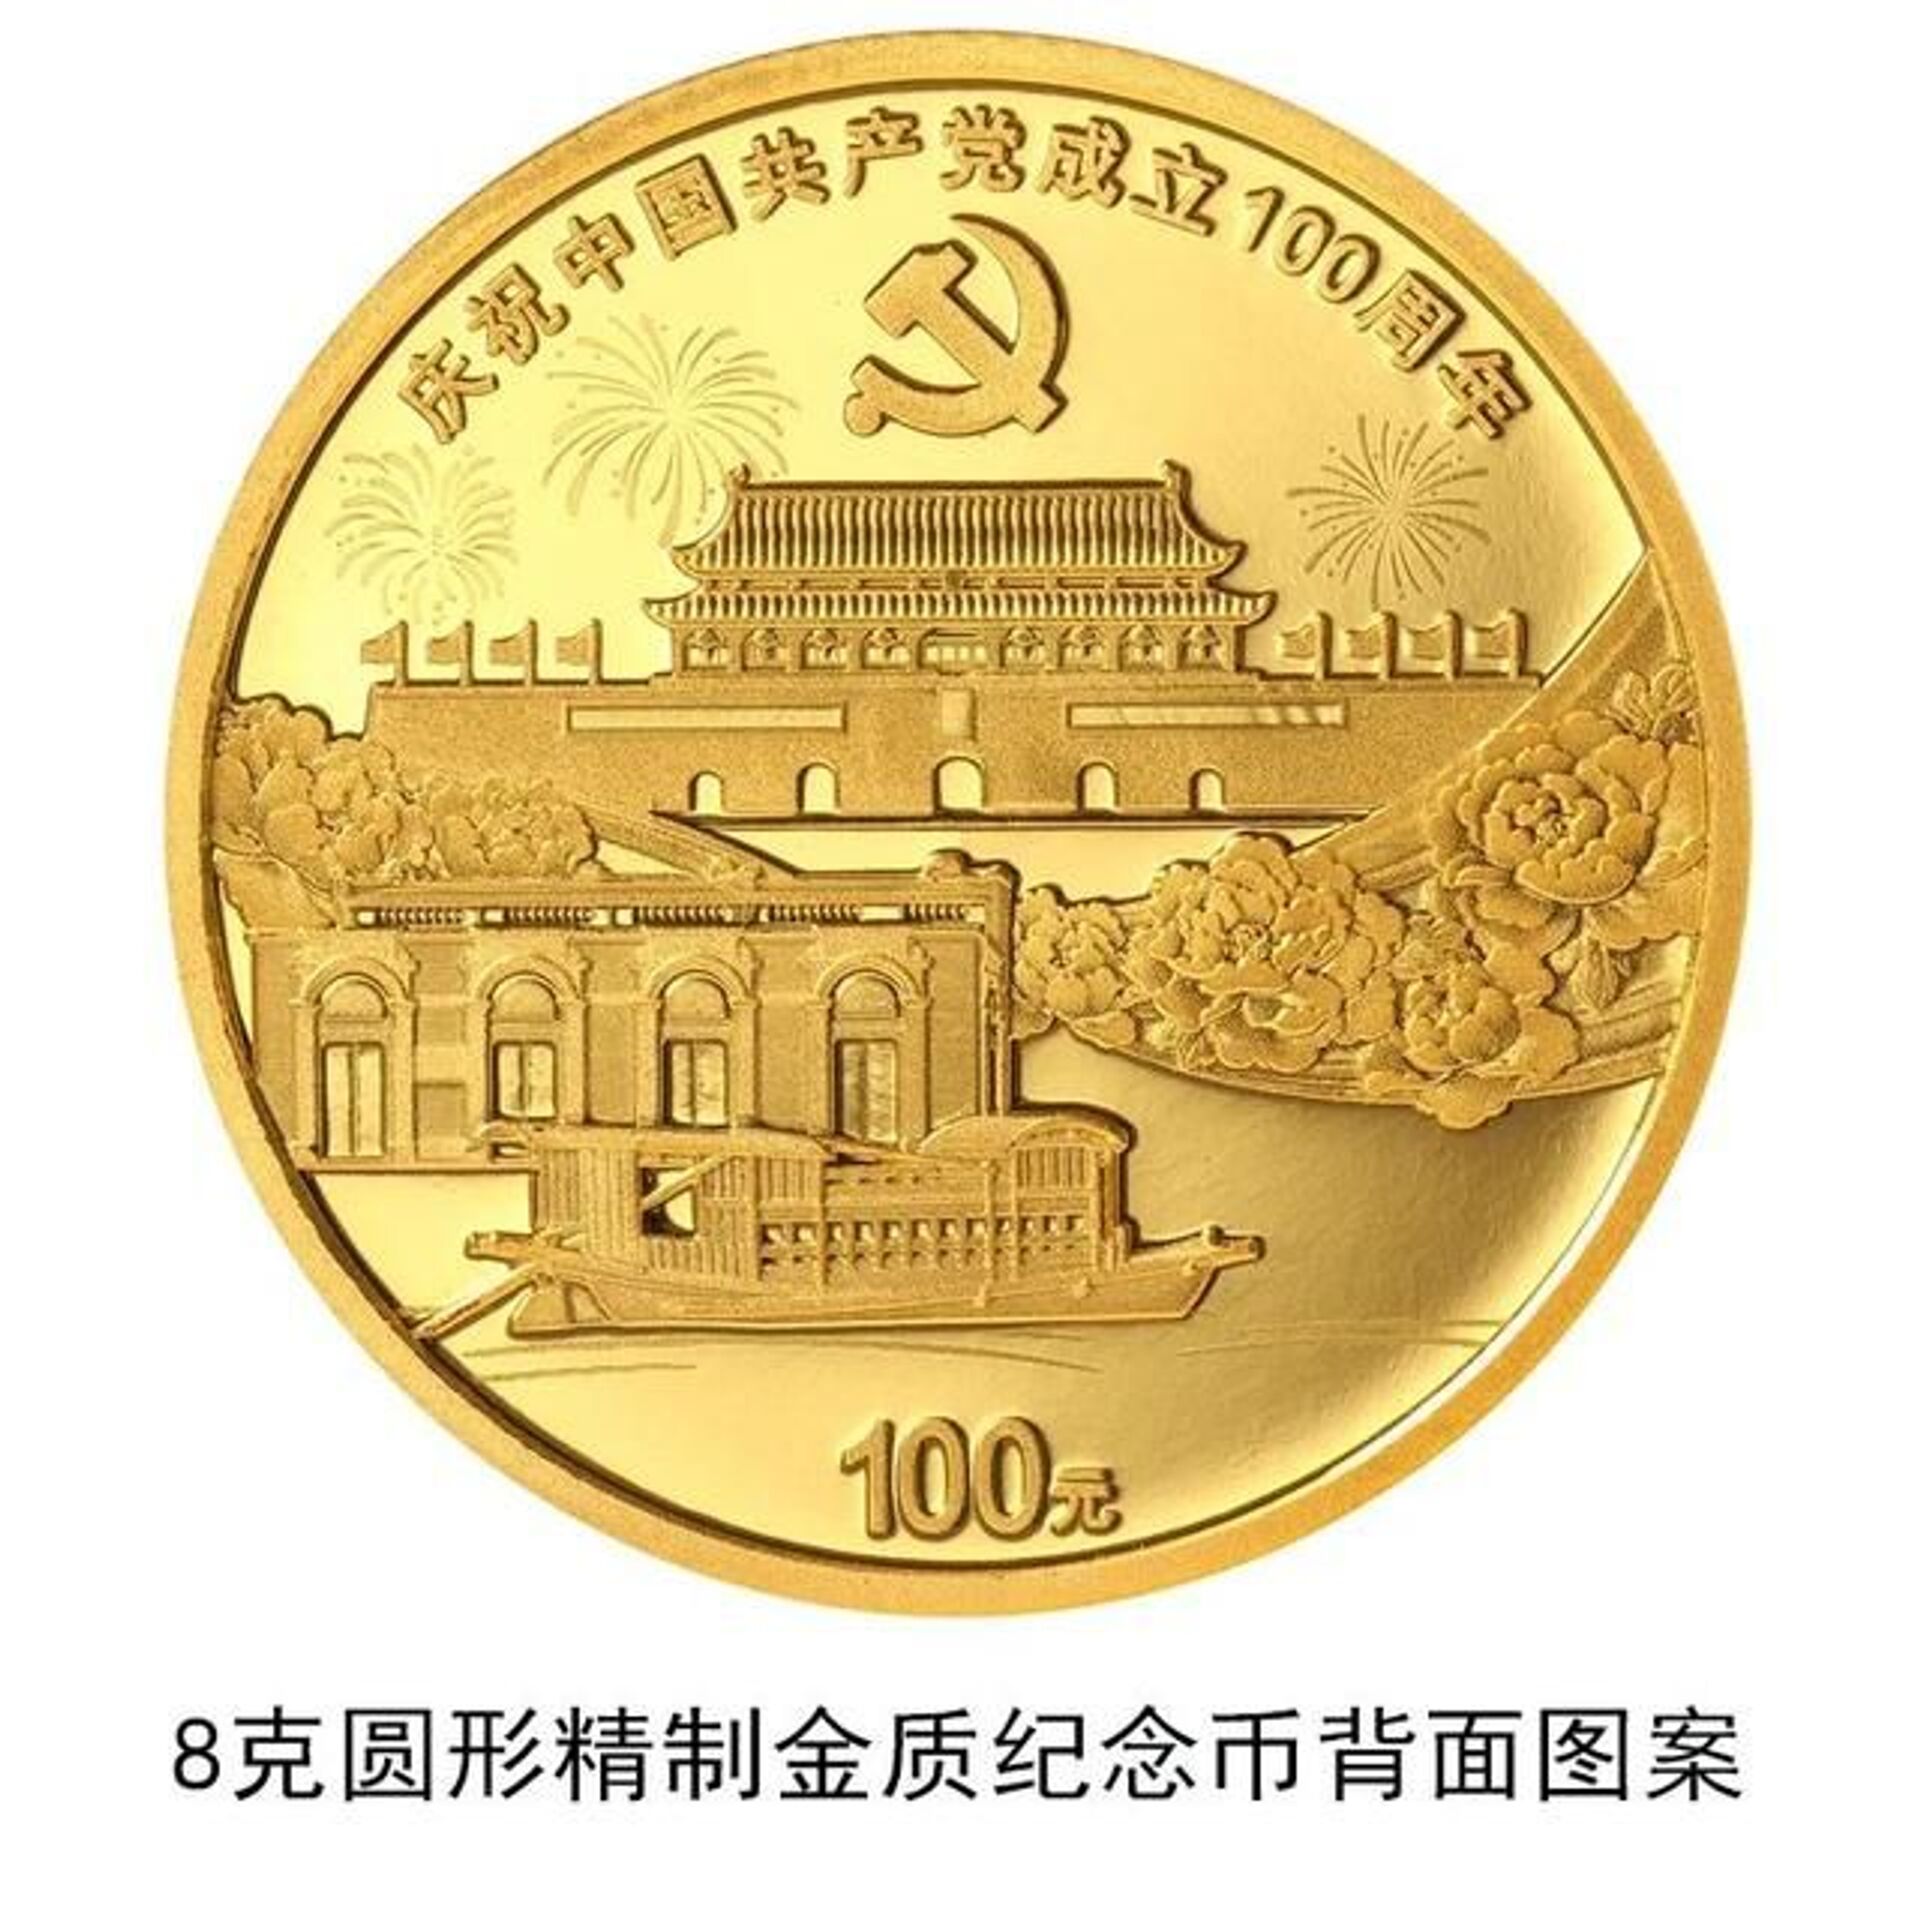 中国人民银行将发行中国共产党成立100周年纪念币- 2021年6月18日 